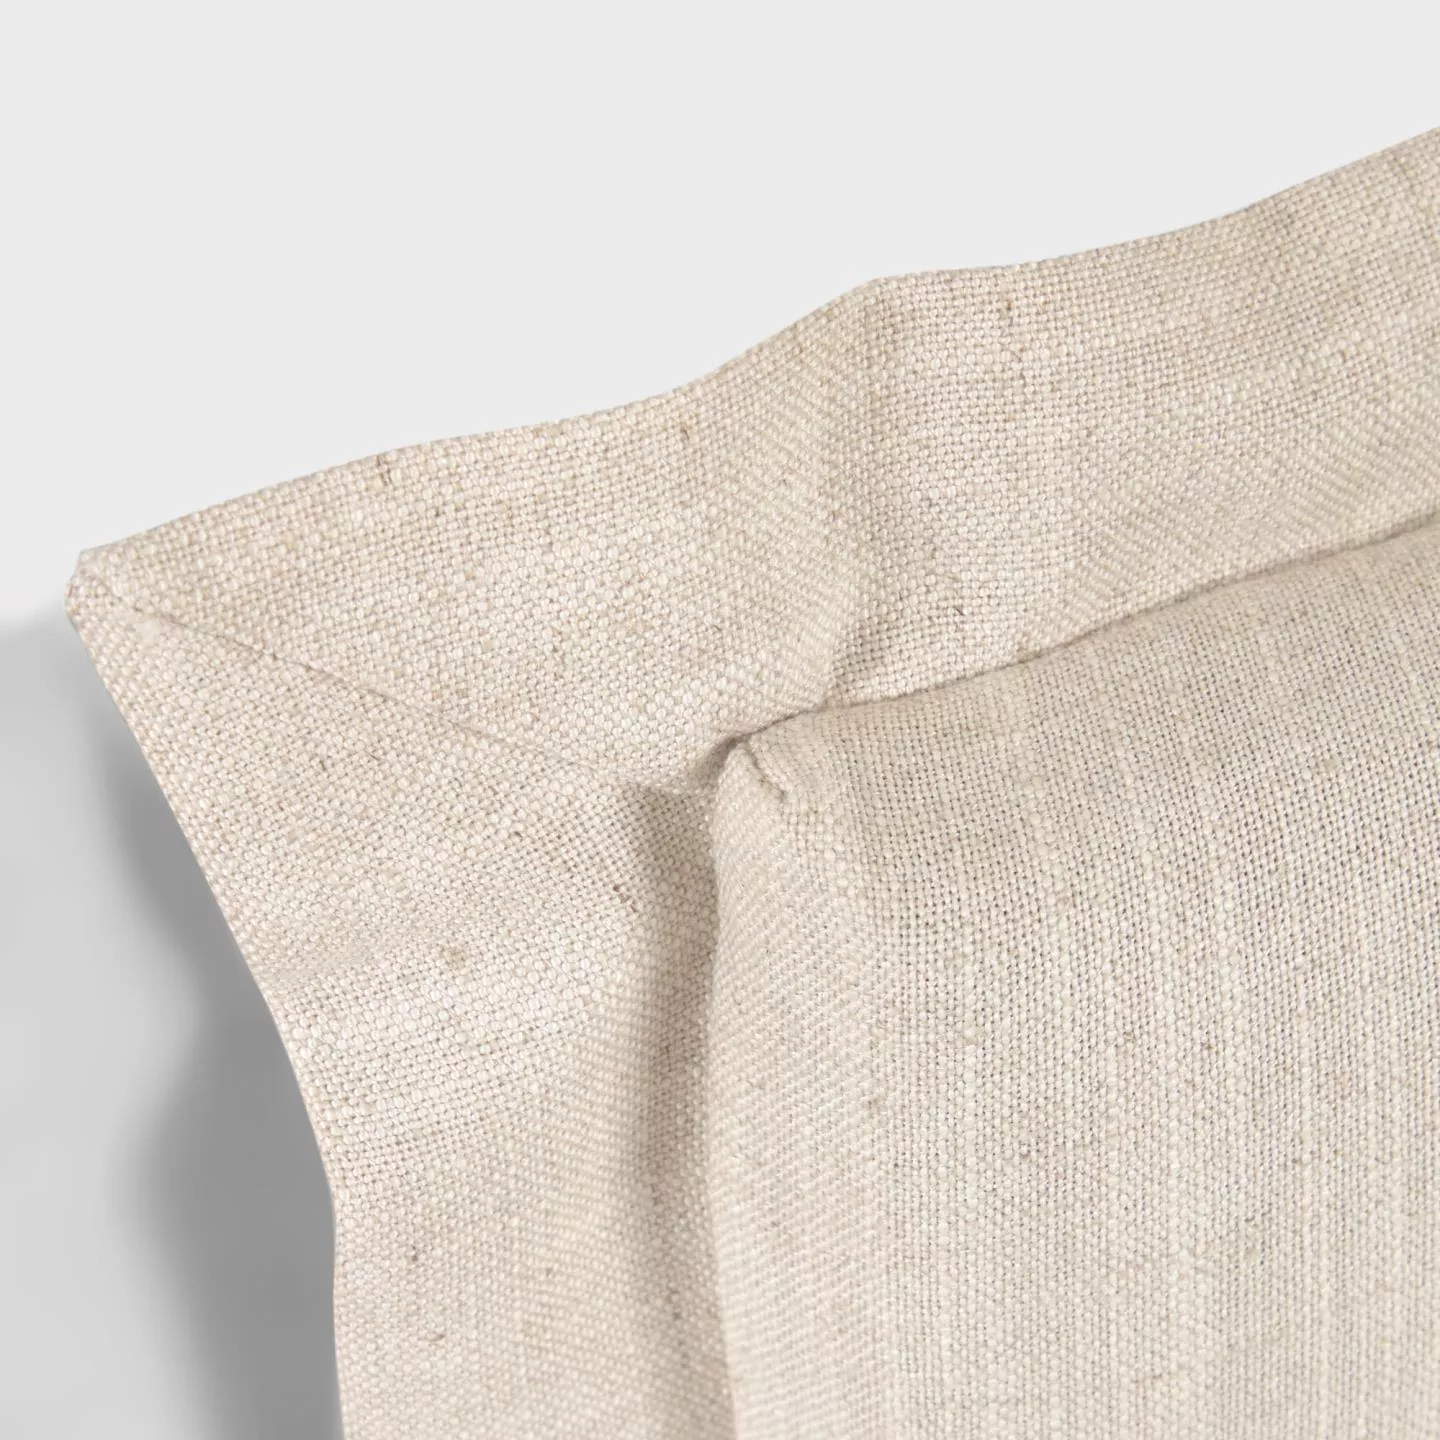 Изголовье La Forma лен белого цвета Tanit со съемным чехлом 206 x 106 см